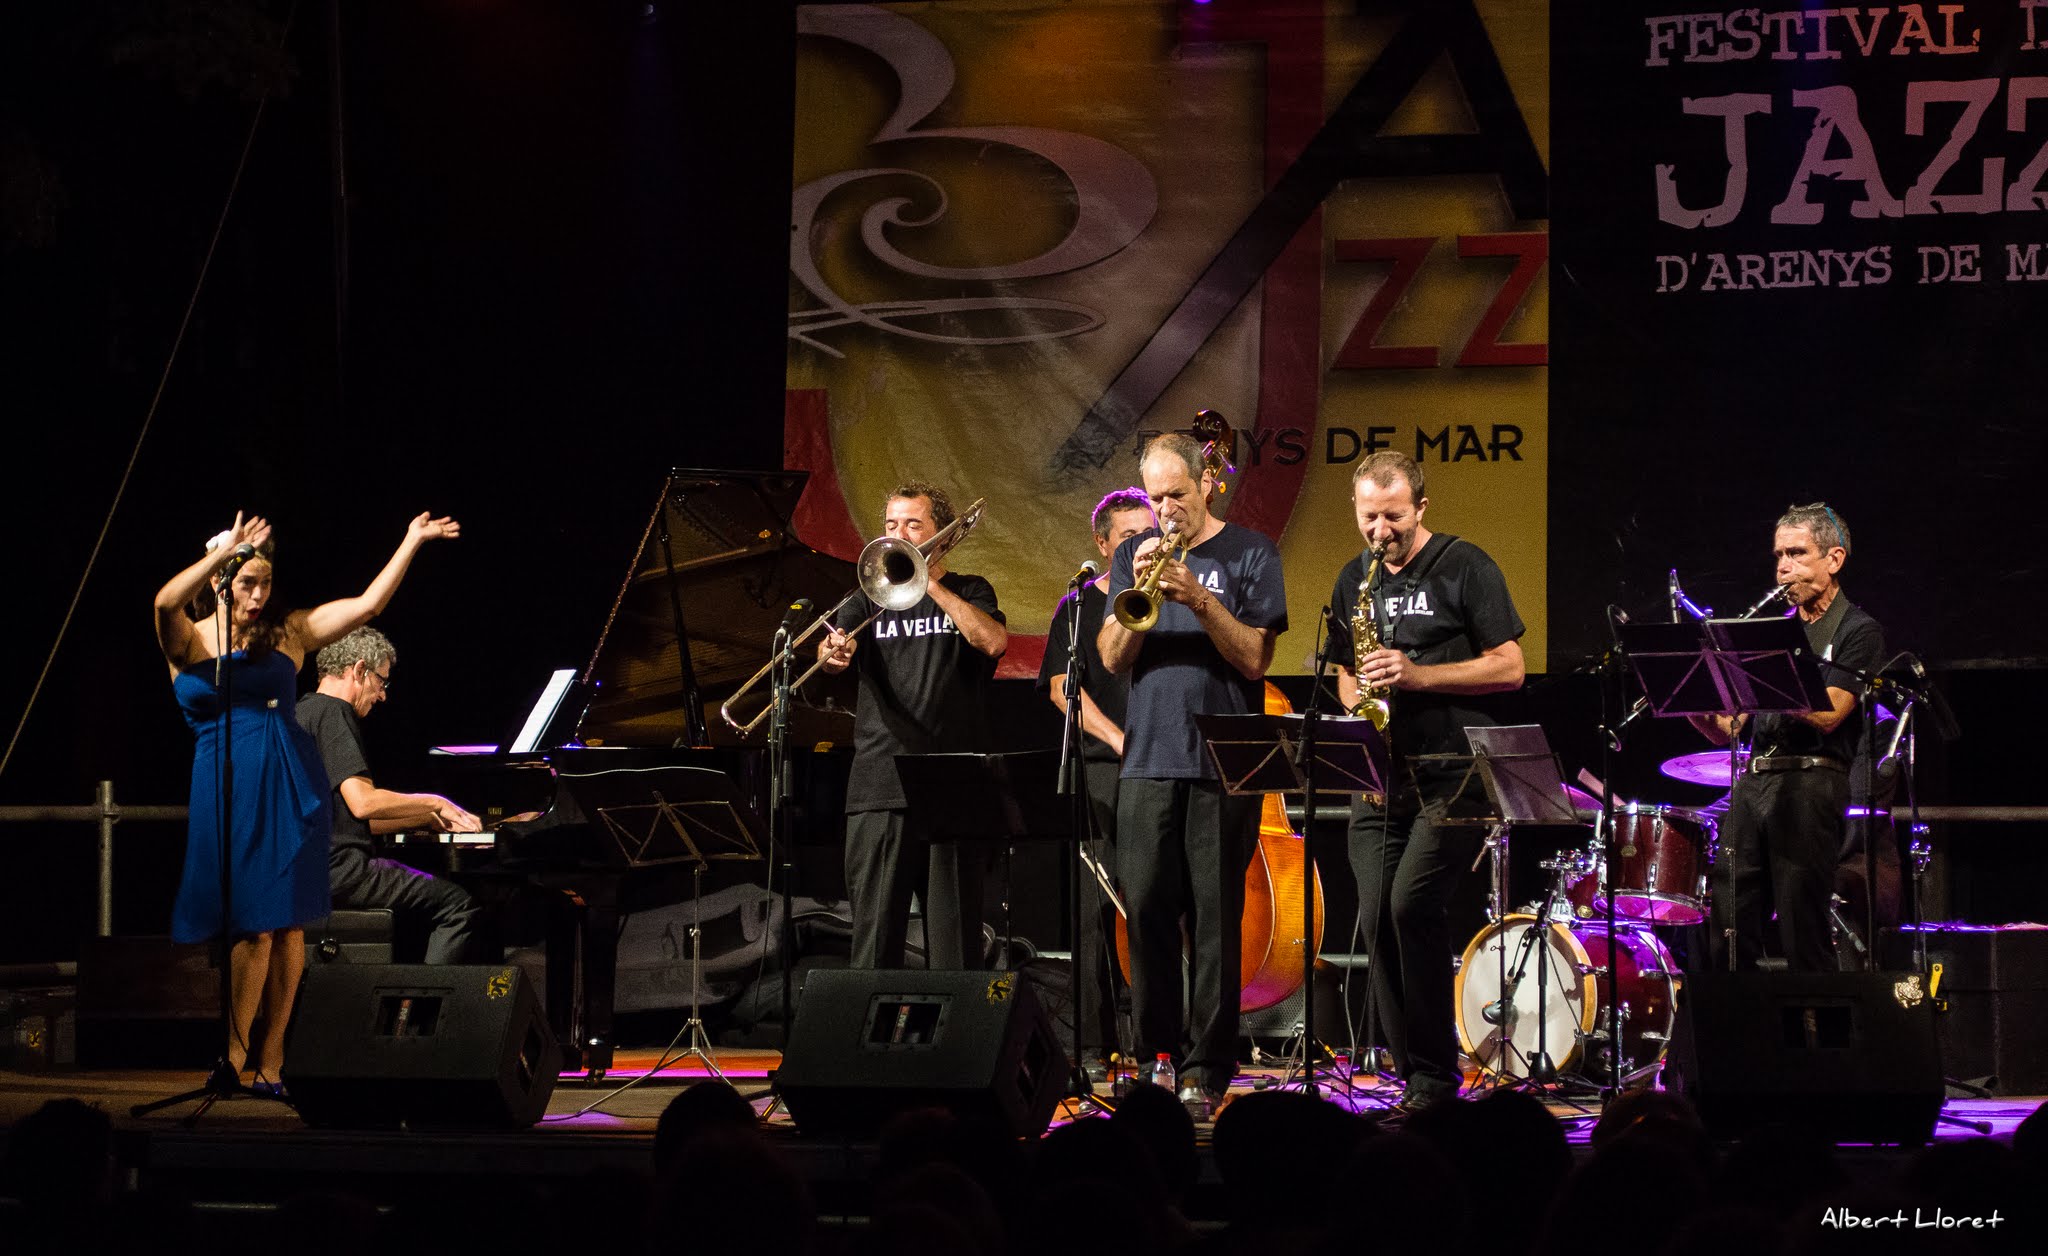 Imatges del 25 Festival de Jazz d'Arenys de Mar - 2016 - Foto 35405933